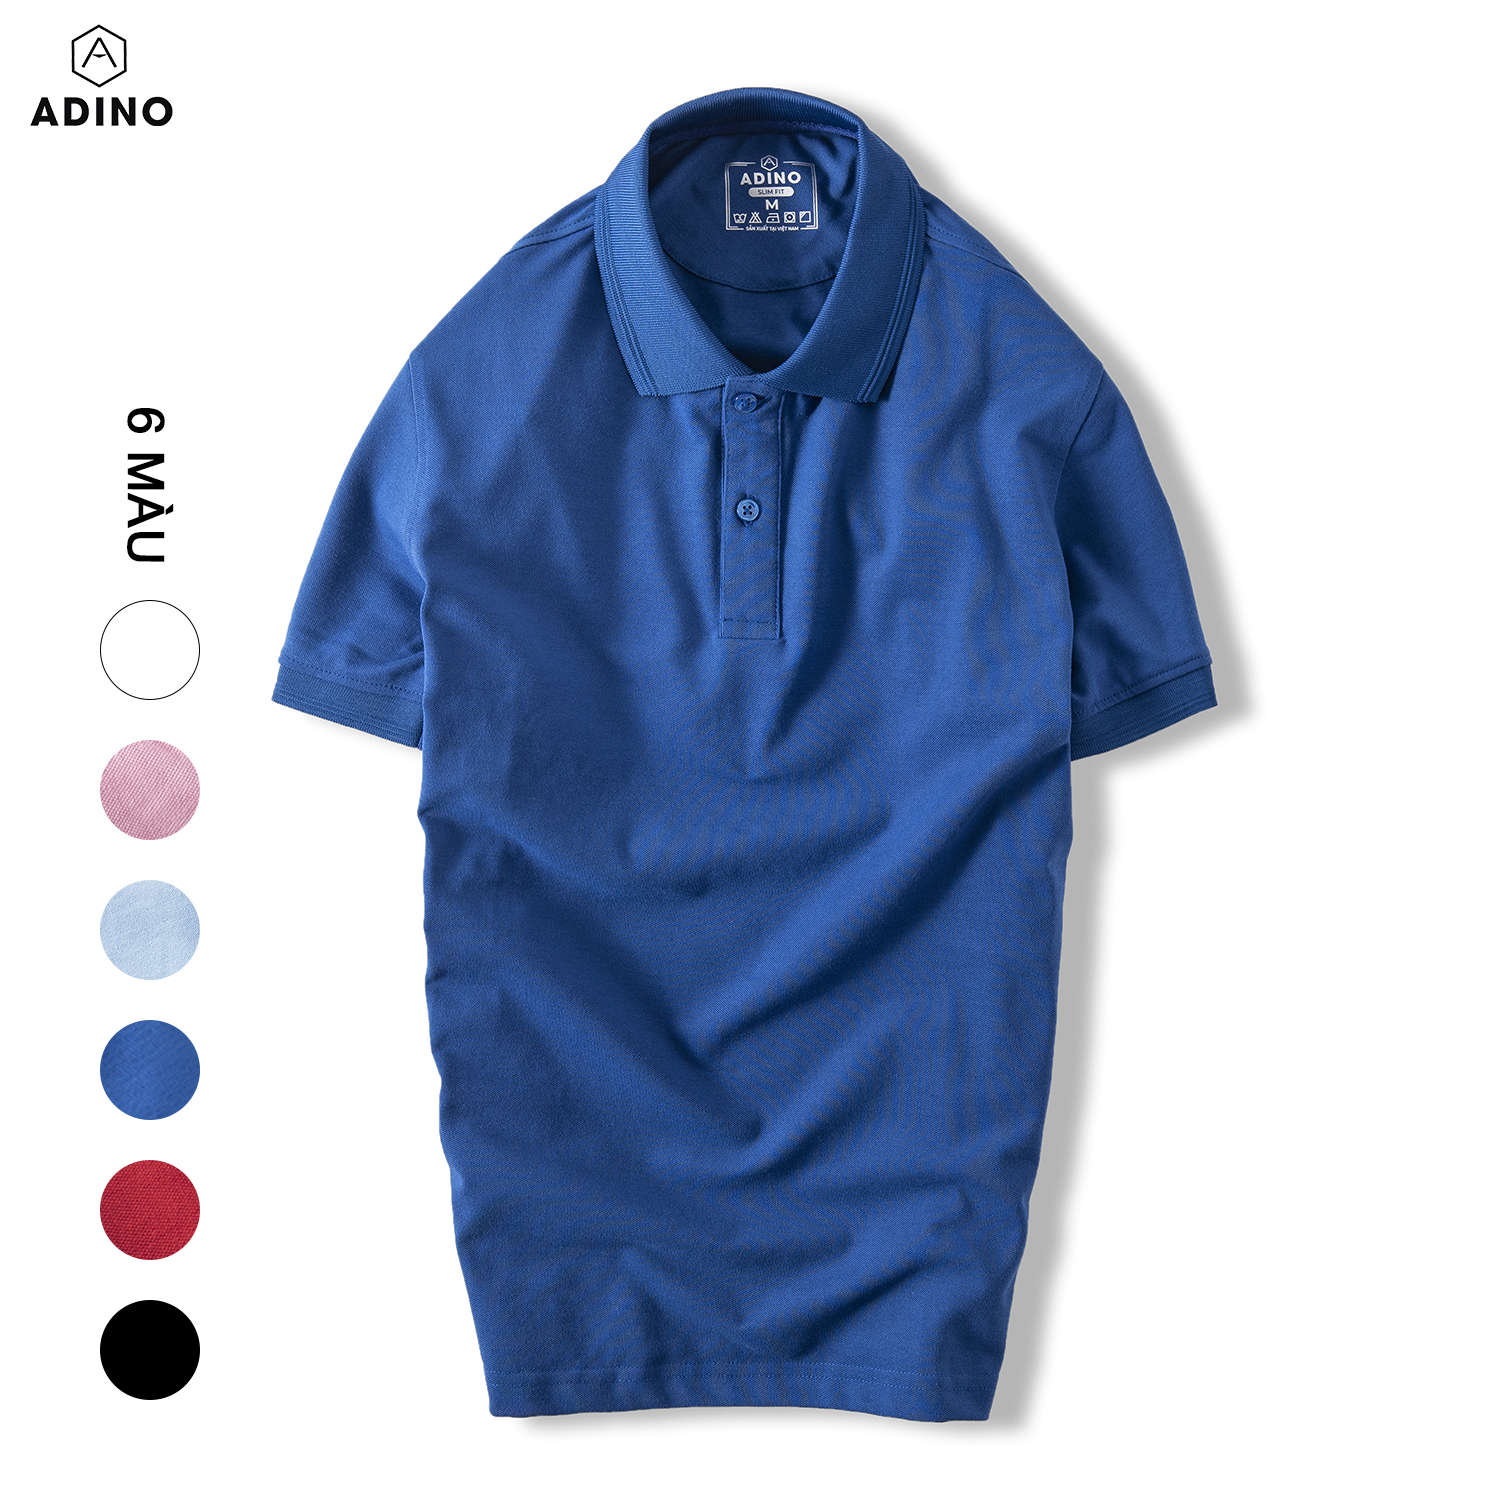 Áo polo nam màu xanh bích đậm phối viền chìm ADINO vải cotton polyester mềm dáng slimfit công sở trẻ trung năng động AP83